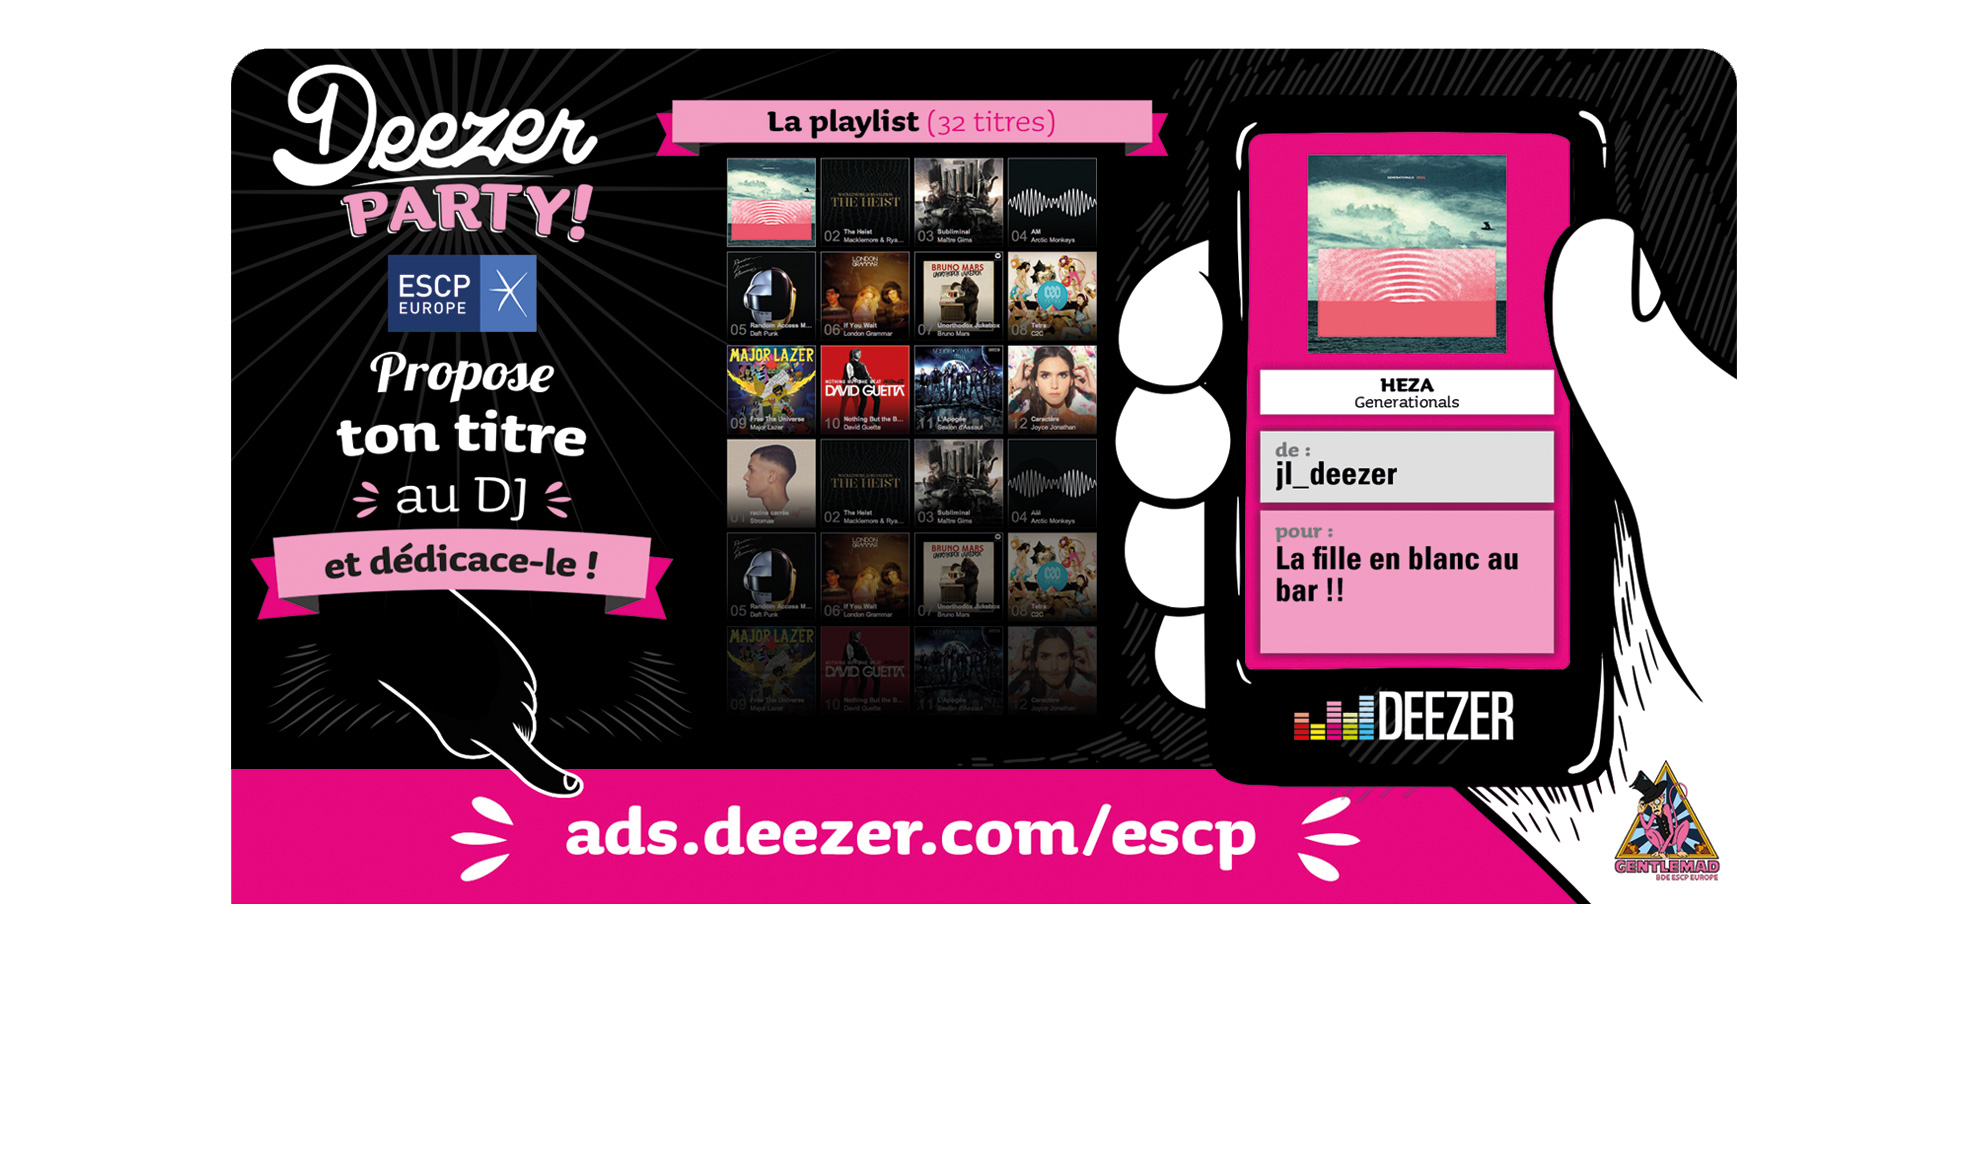 Deezer Party